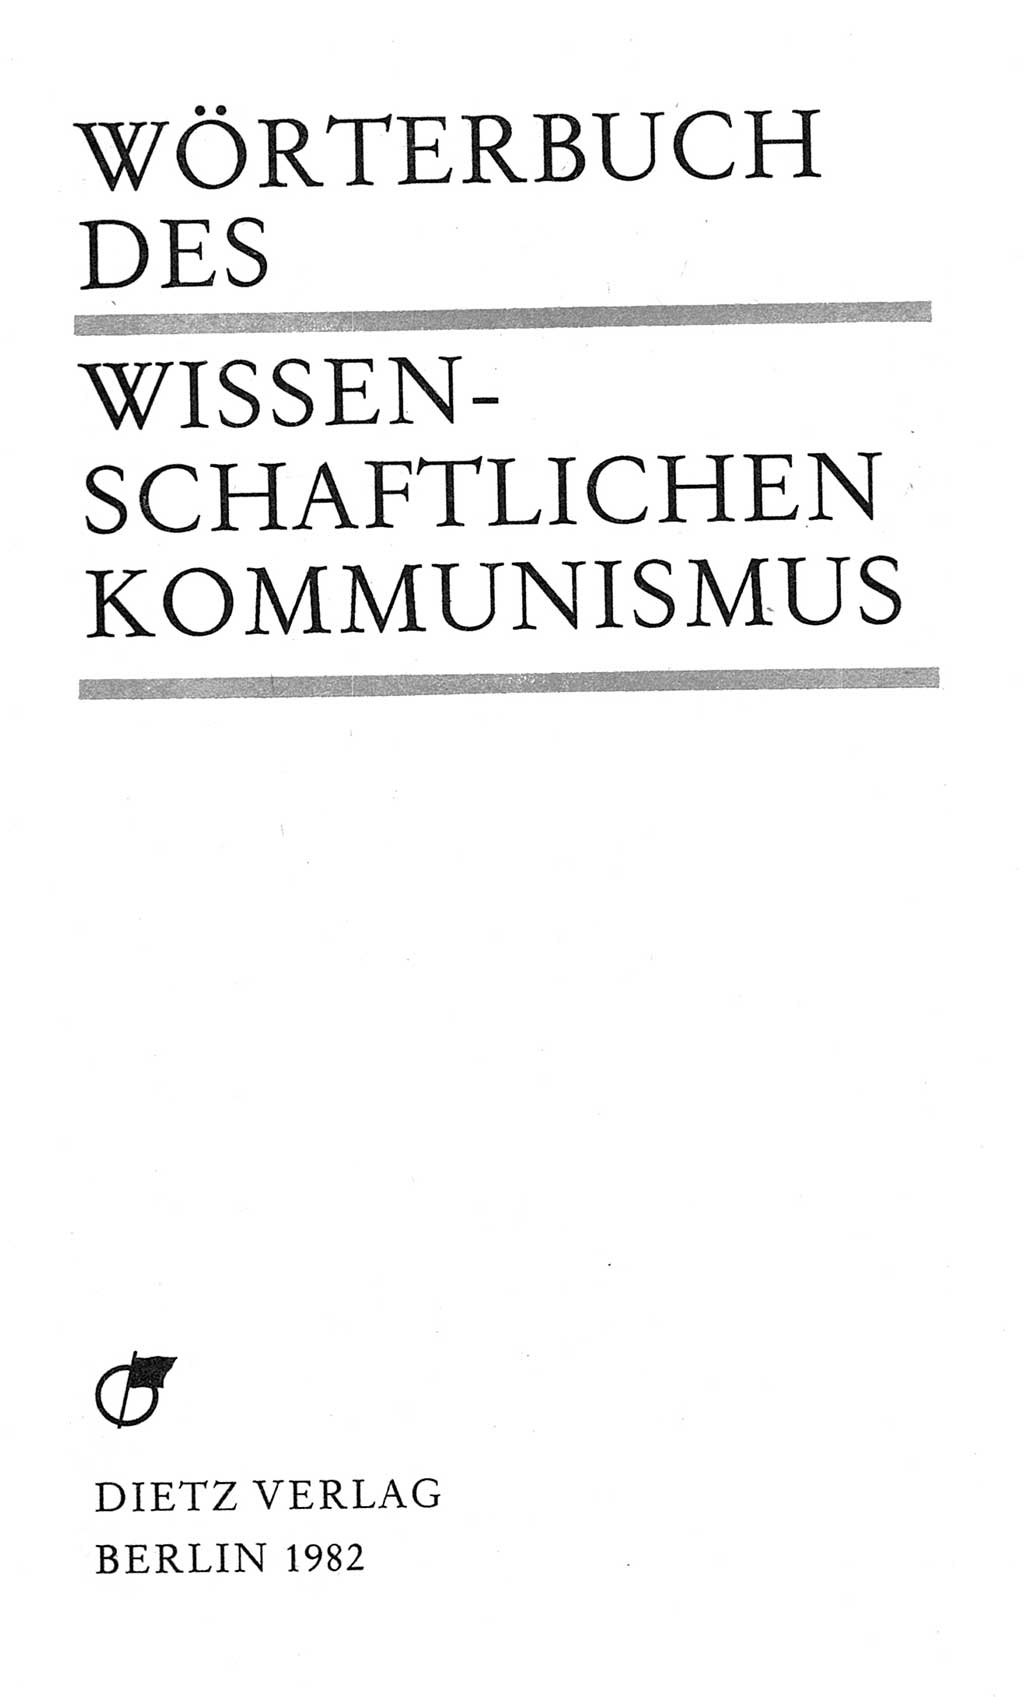 Wörterbuch des wissenschaftlichen Kommunismus [Deutsche Demokratische Republik (DDR)] 1982, Seite 3 (Wb. wiss. Komm. DDR 1982, S. 3)